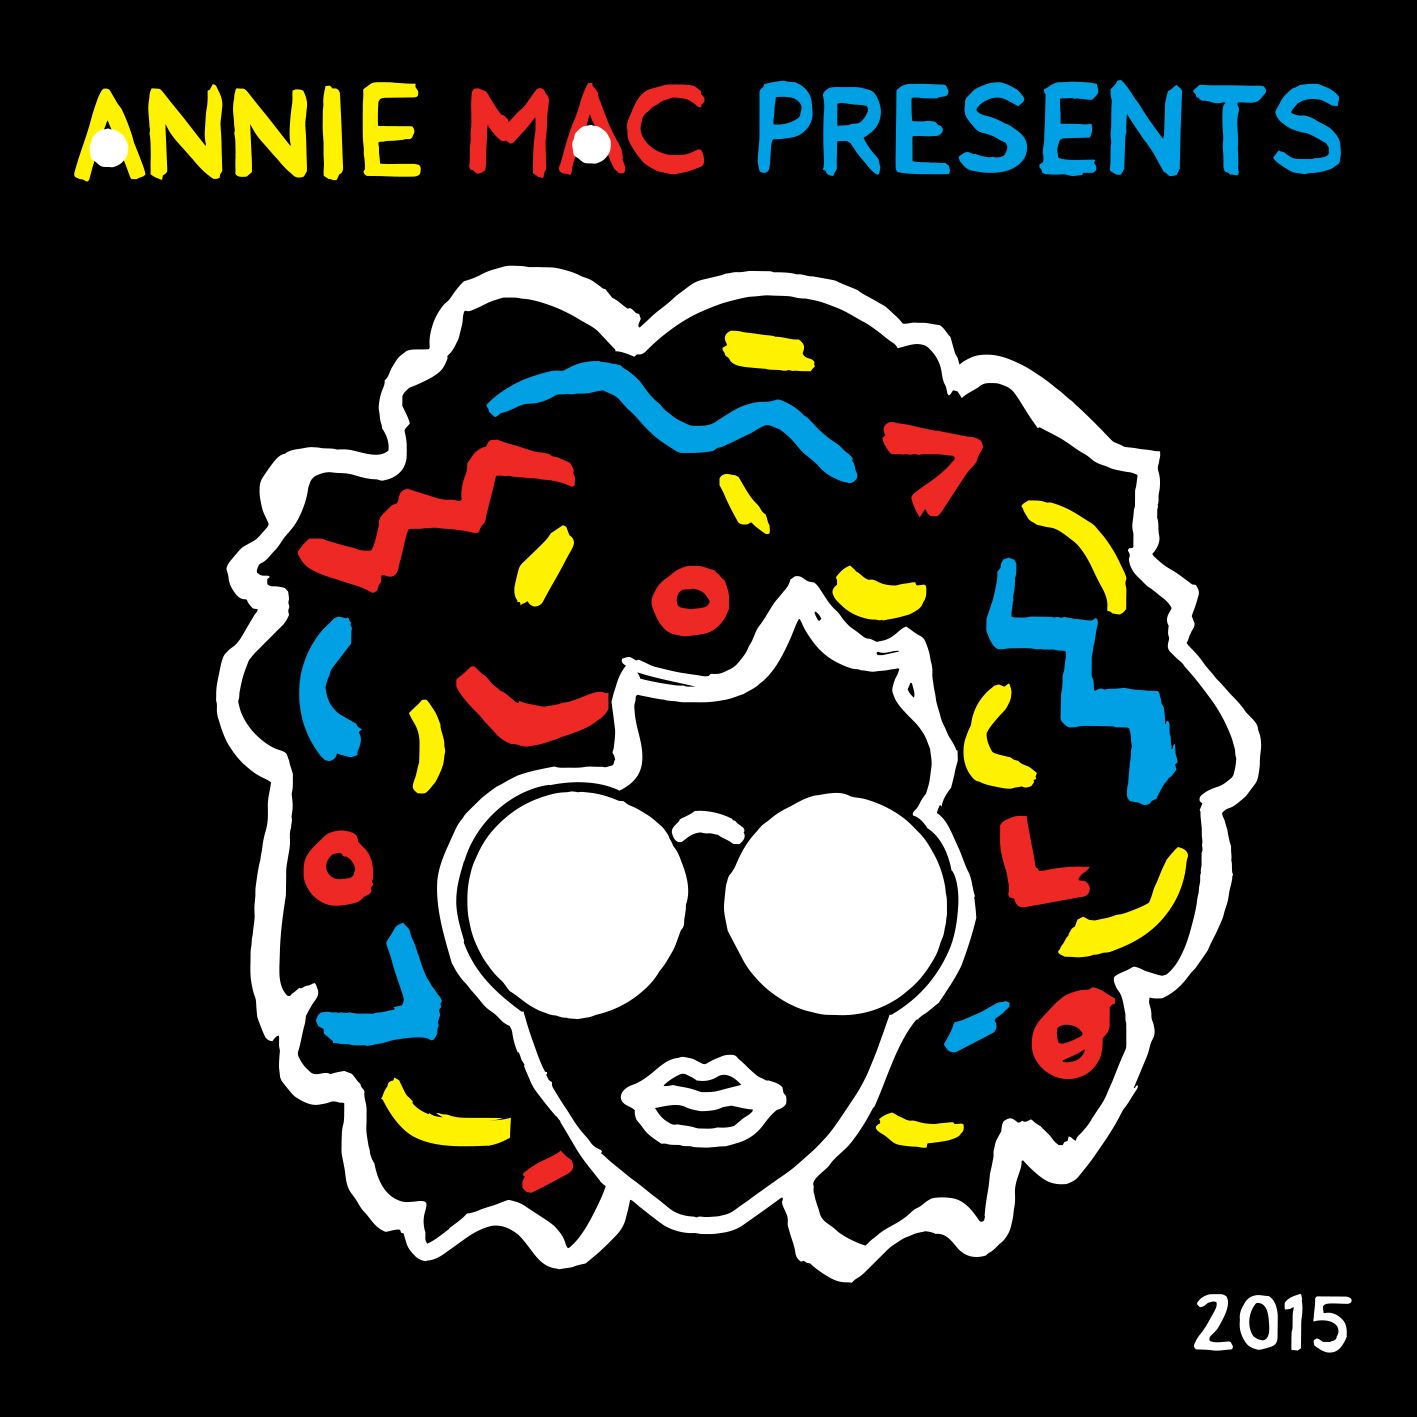 amp-compilation2015-final-packshot-rgb.jpg